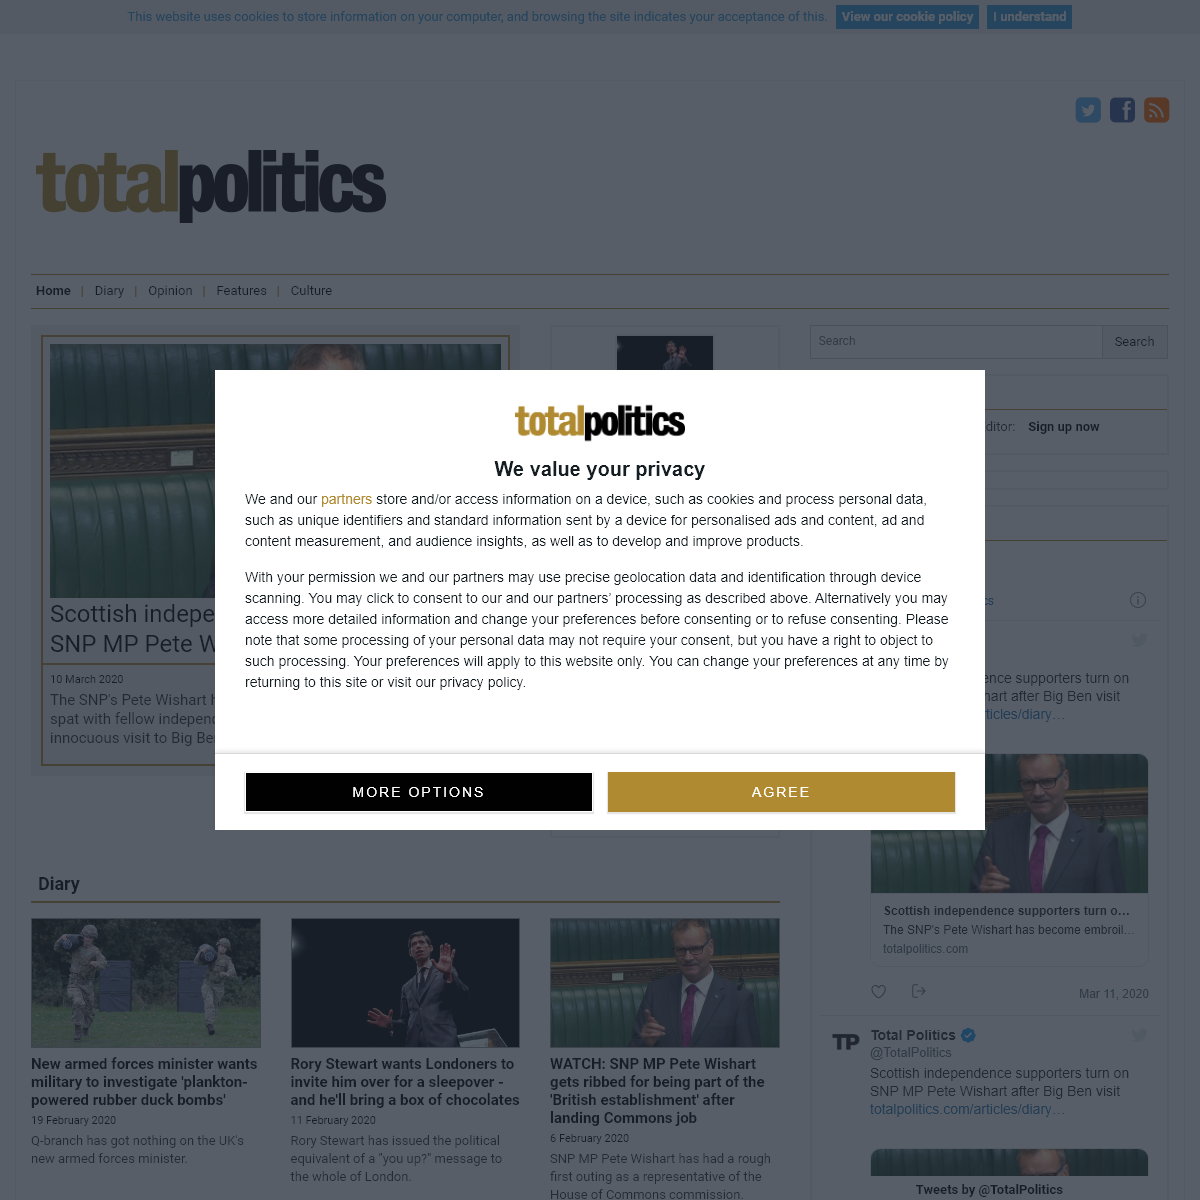 A complete backup of totalpolitics.com